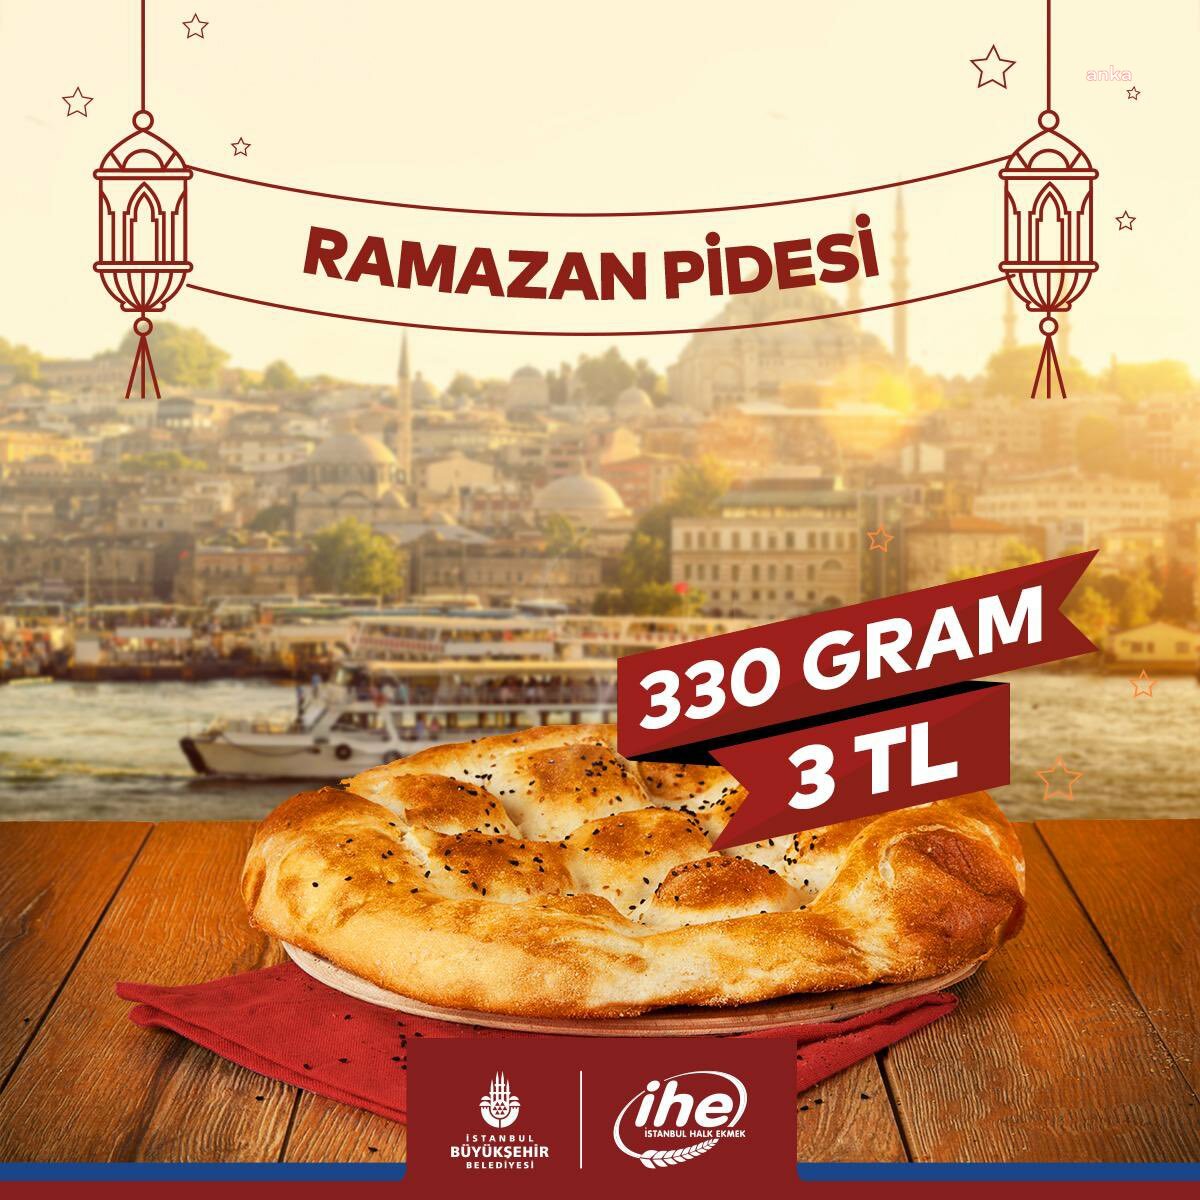 İstanbul Halk Ekmek, 330 gramlık ramazan pidesini 3 liradan satacak